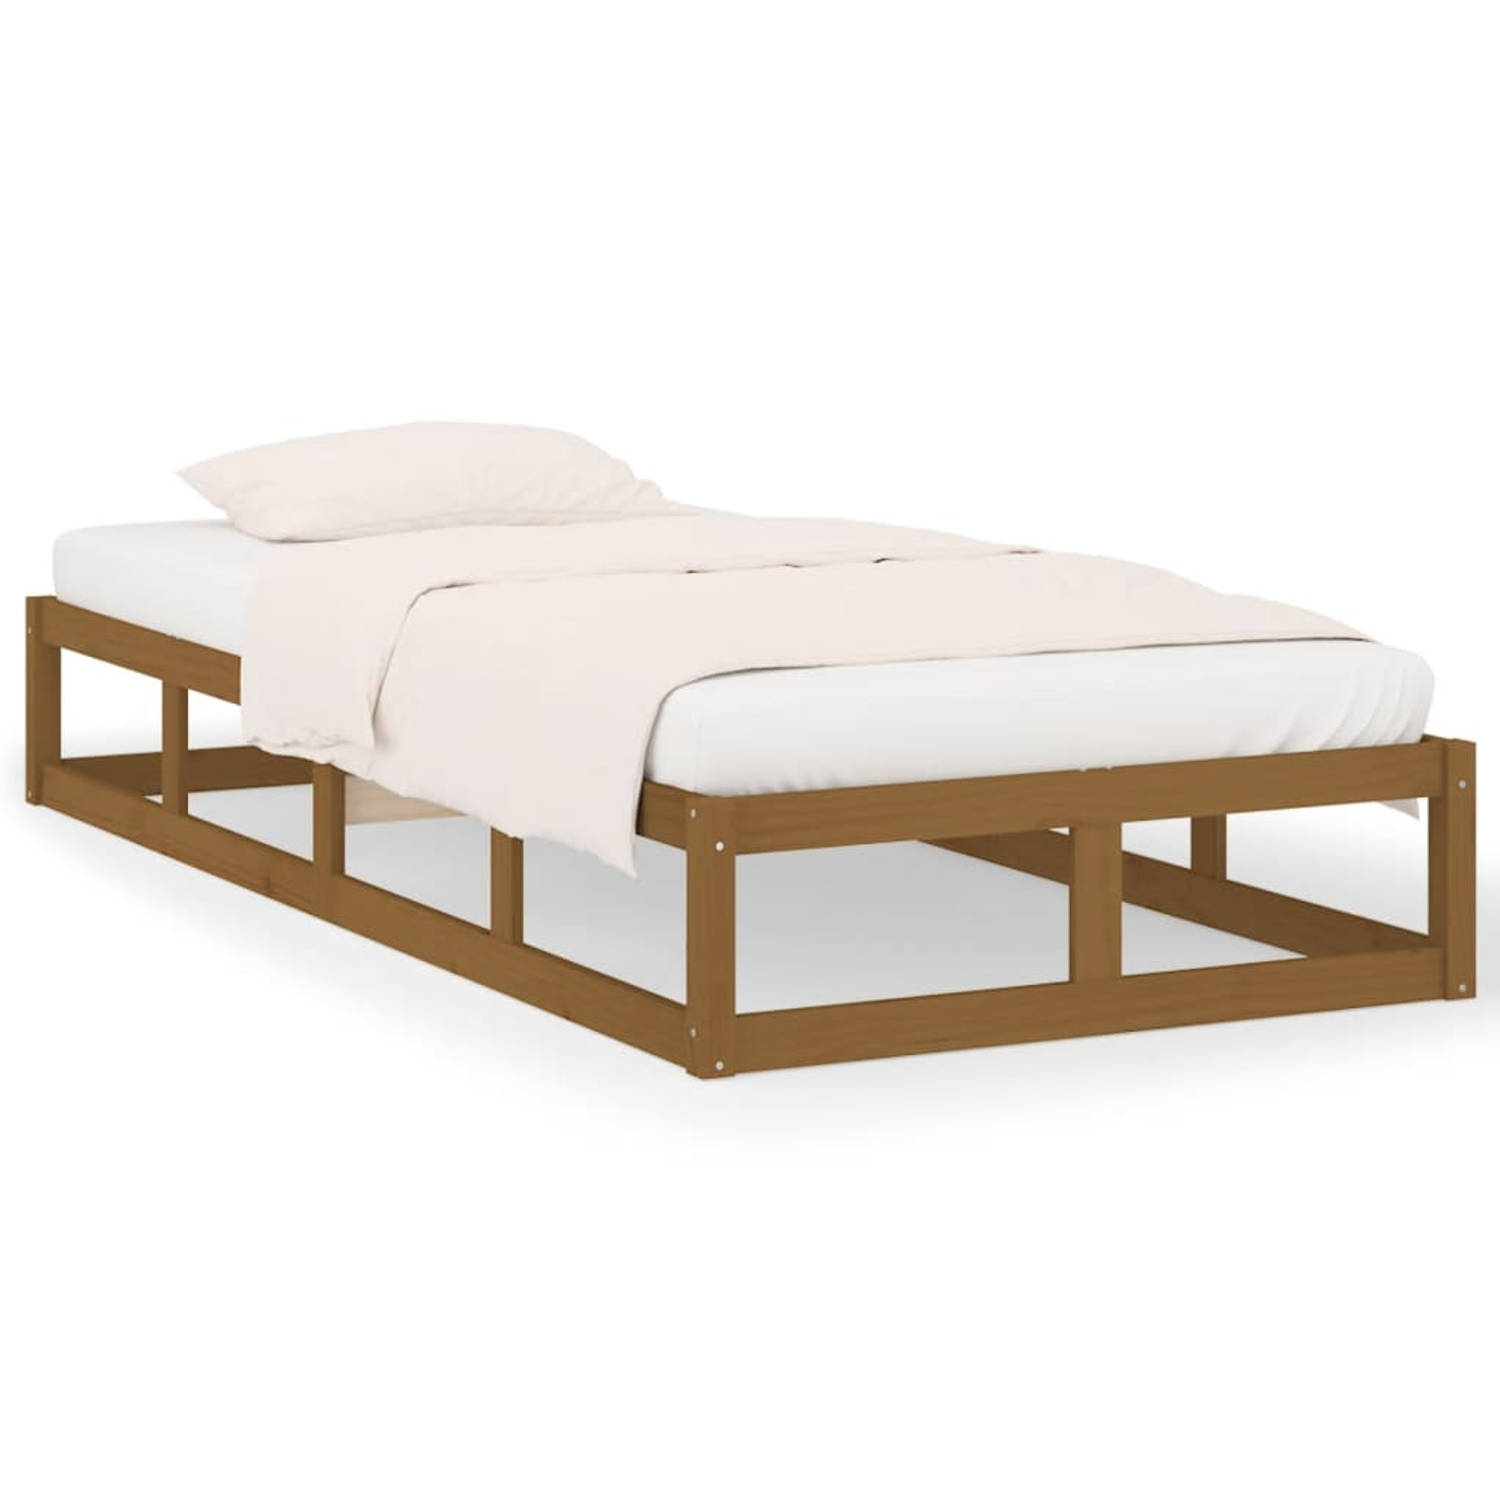 The Living Store Bedframe massief hout honingbruin 90x190 cm 3FT Single - Bedframe - Bedframes - Bed - Bedbodem - Ledikant - Bed Frame - Massief Houten Bedframe - Slaapmeubel - Een